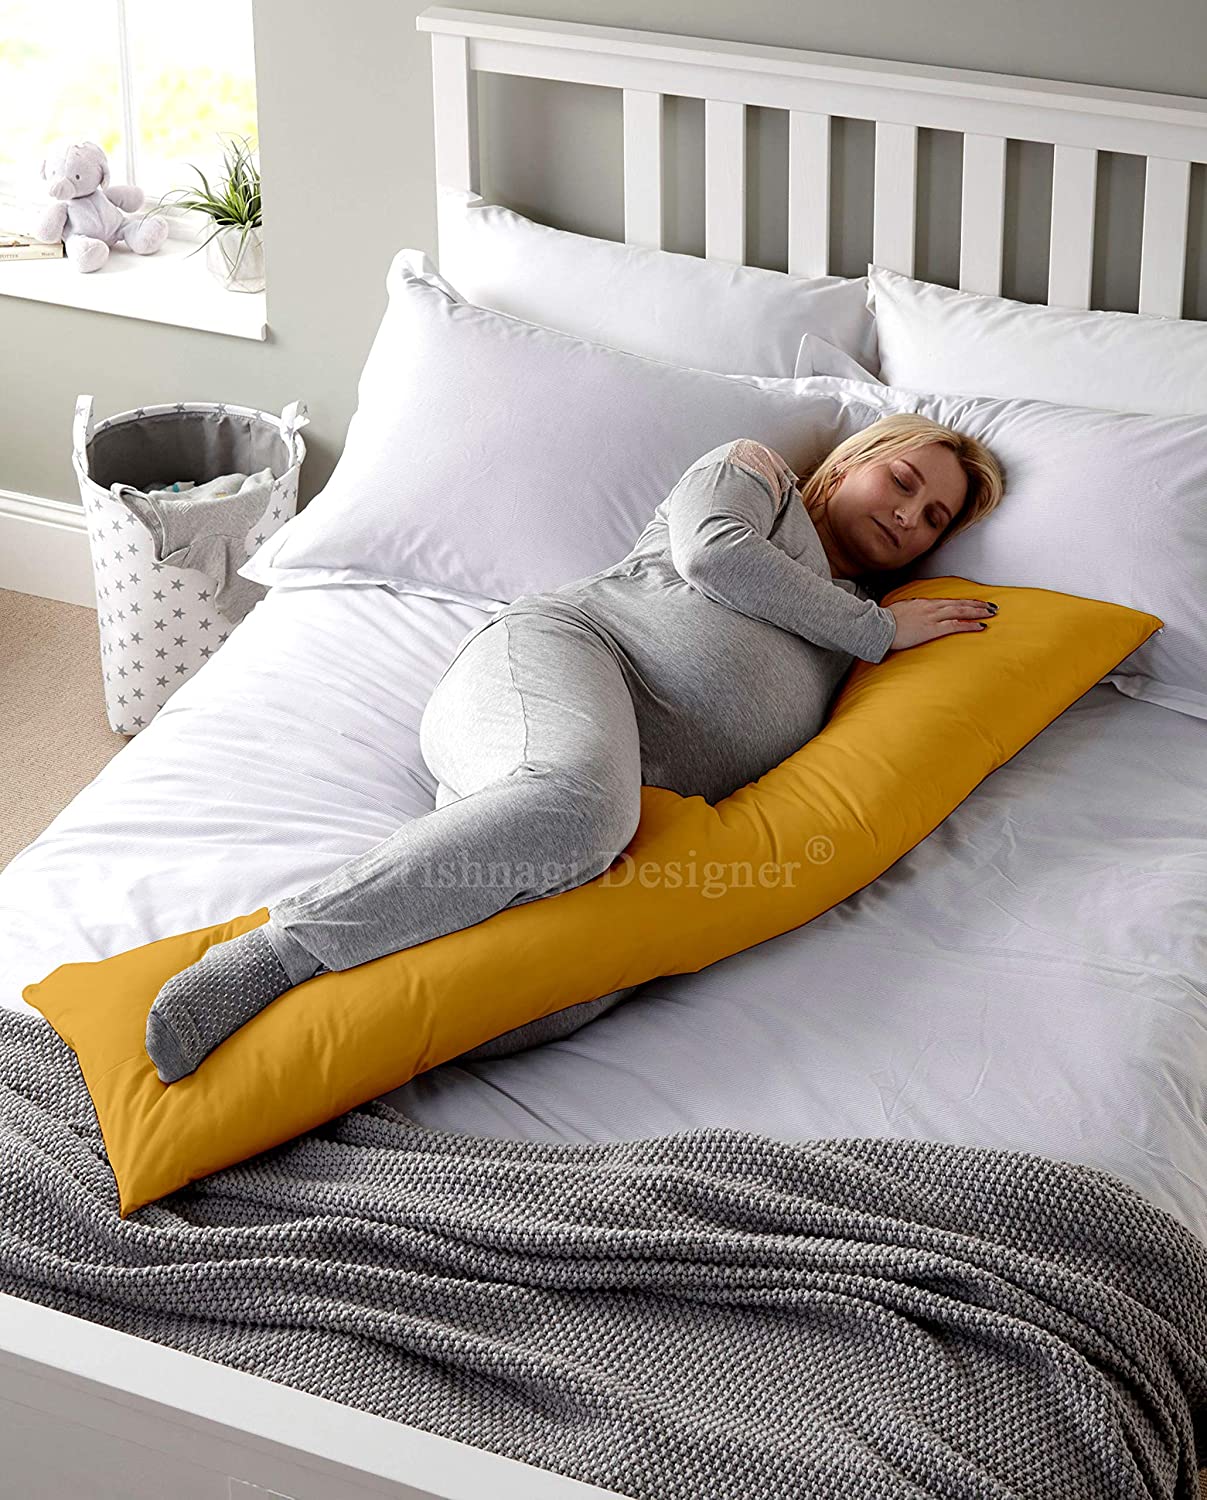 Tishnagi Designer Cotton Soft Stripes Body Pillow